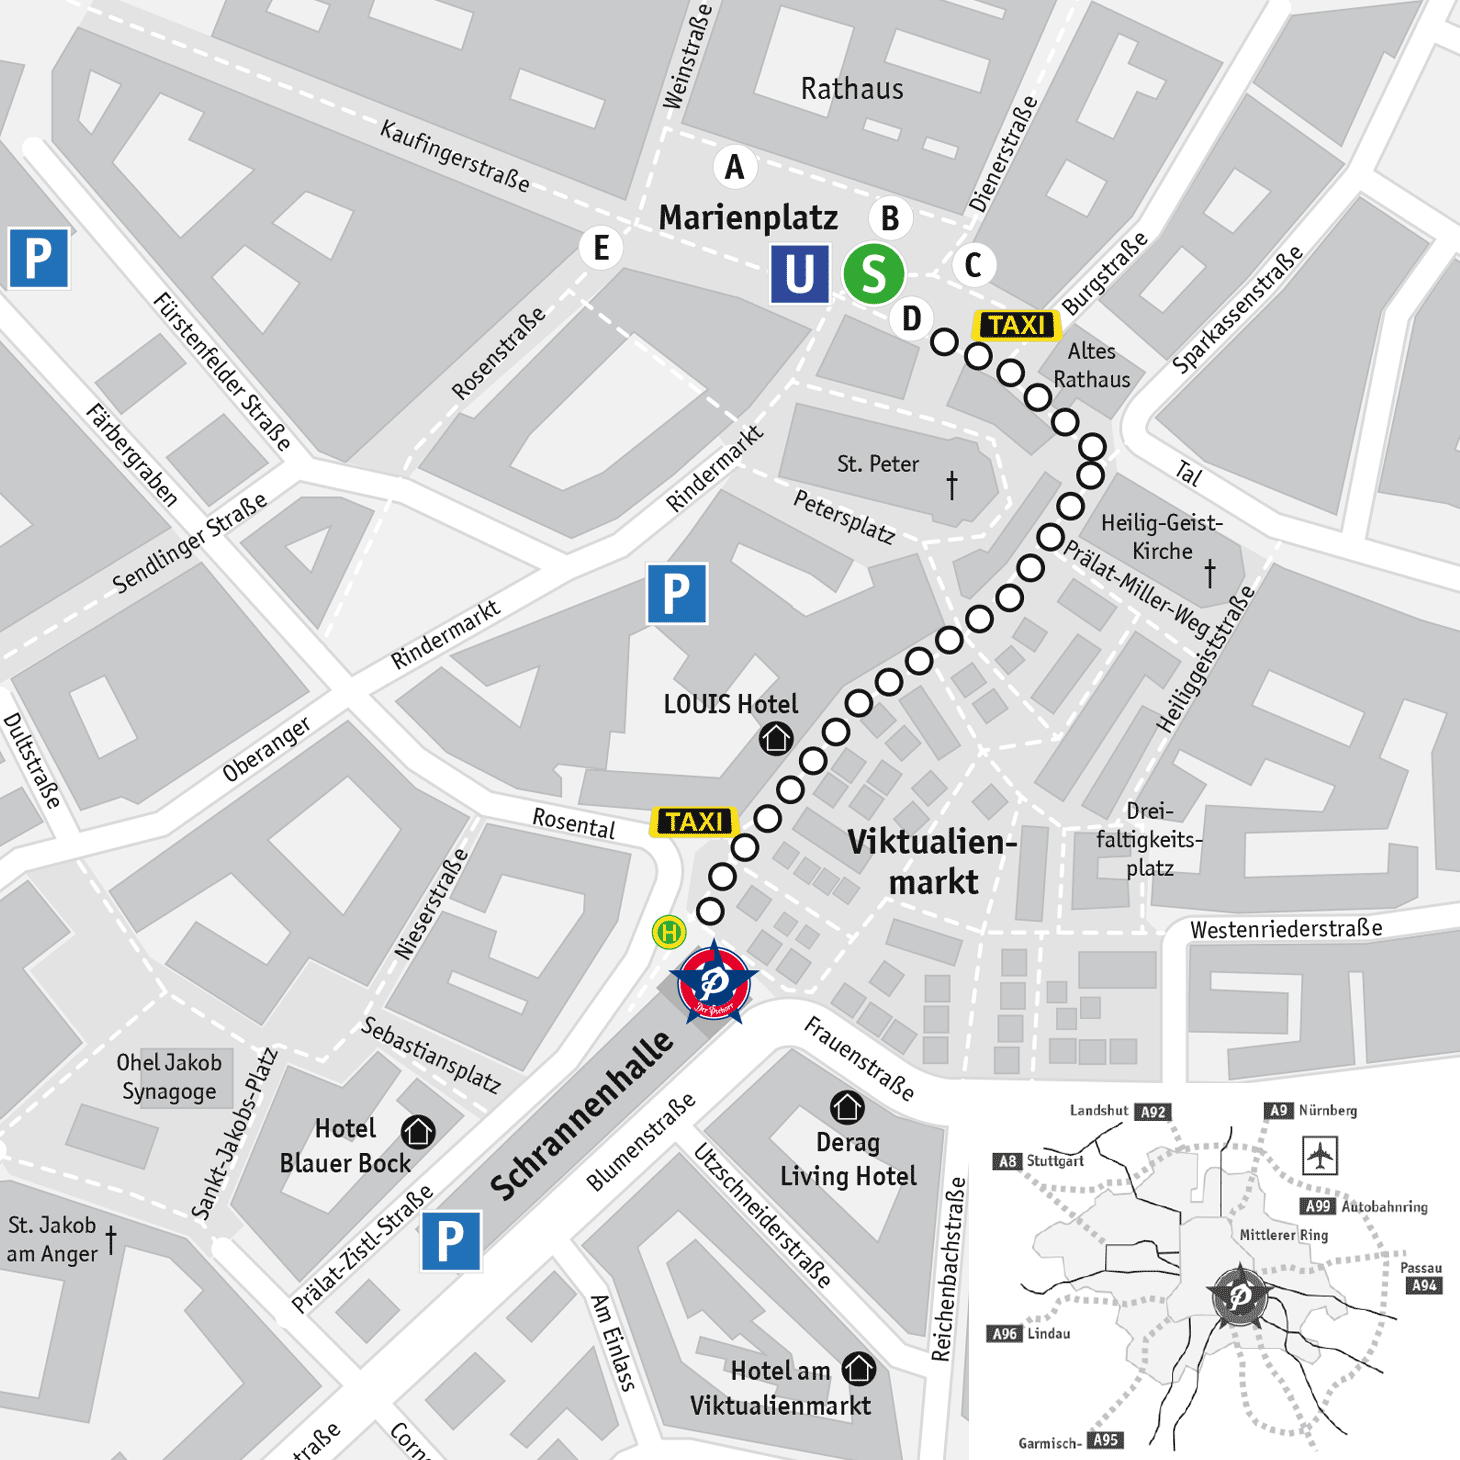 Figure: Street plan of downtown of munich - Der Pschorr